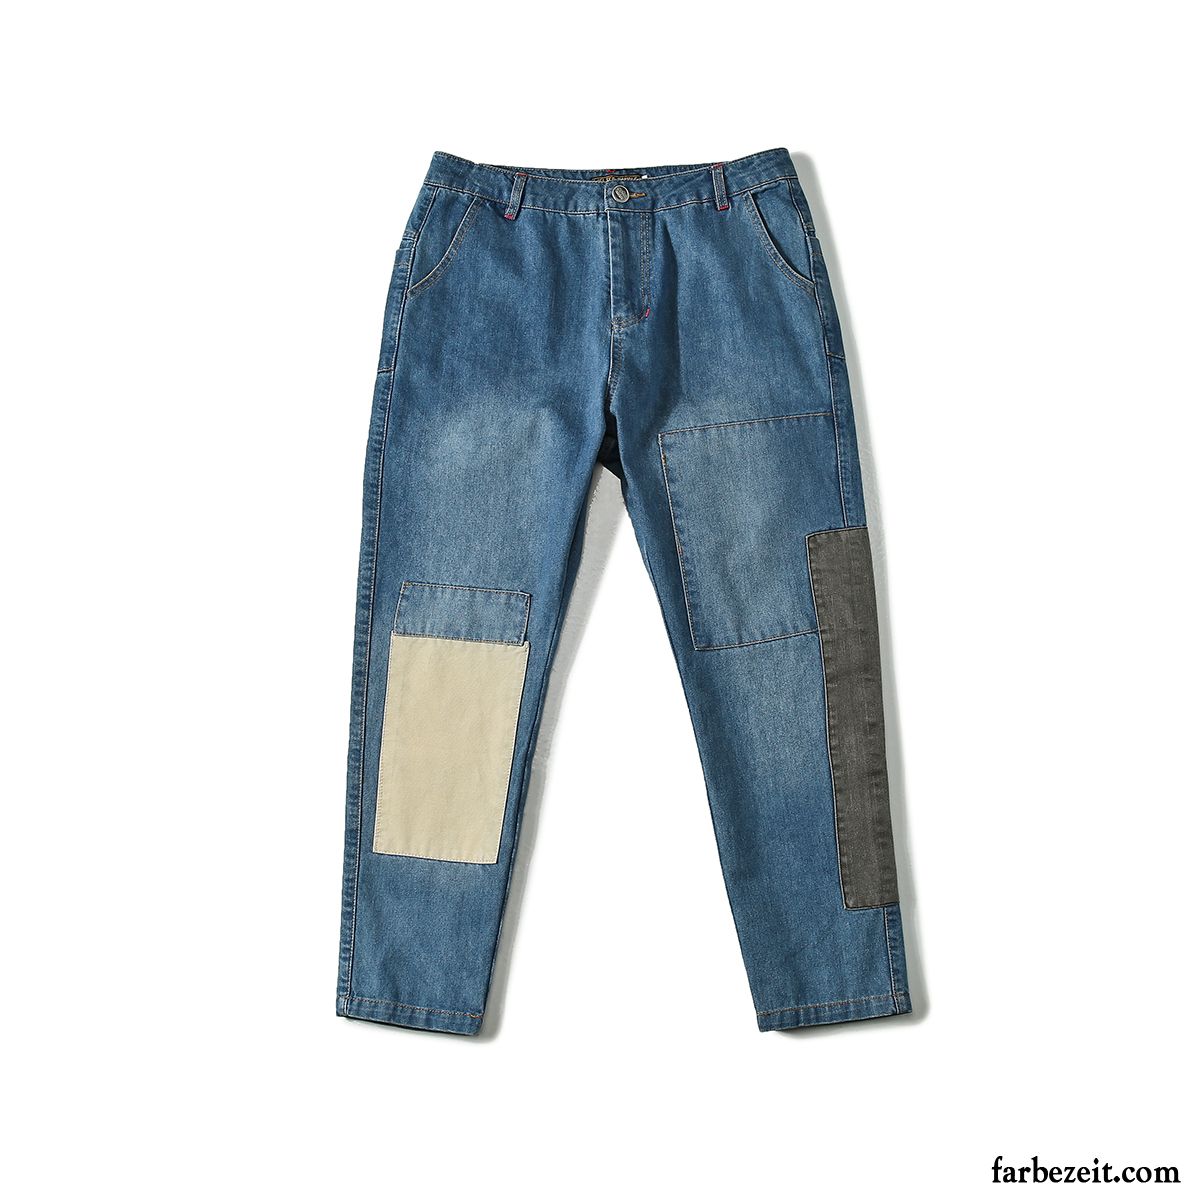 Röhrenjeans Für Männer Jugend Waschen Patch Jeans Harlan Spleißen Blau Trend Freizeit Schmales Bein Herren